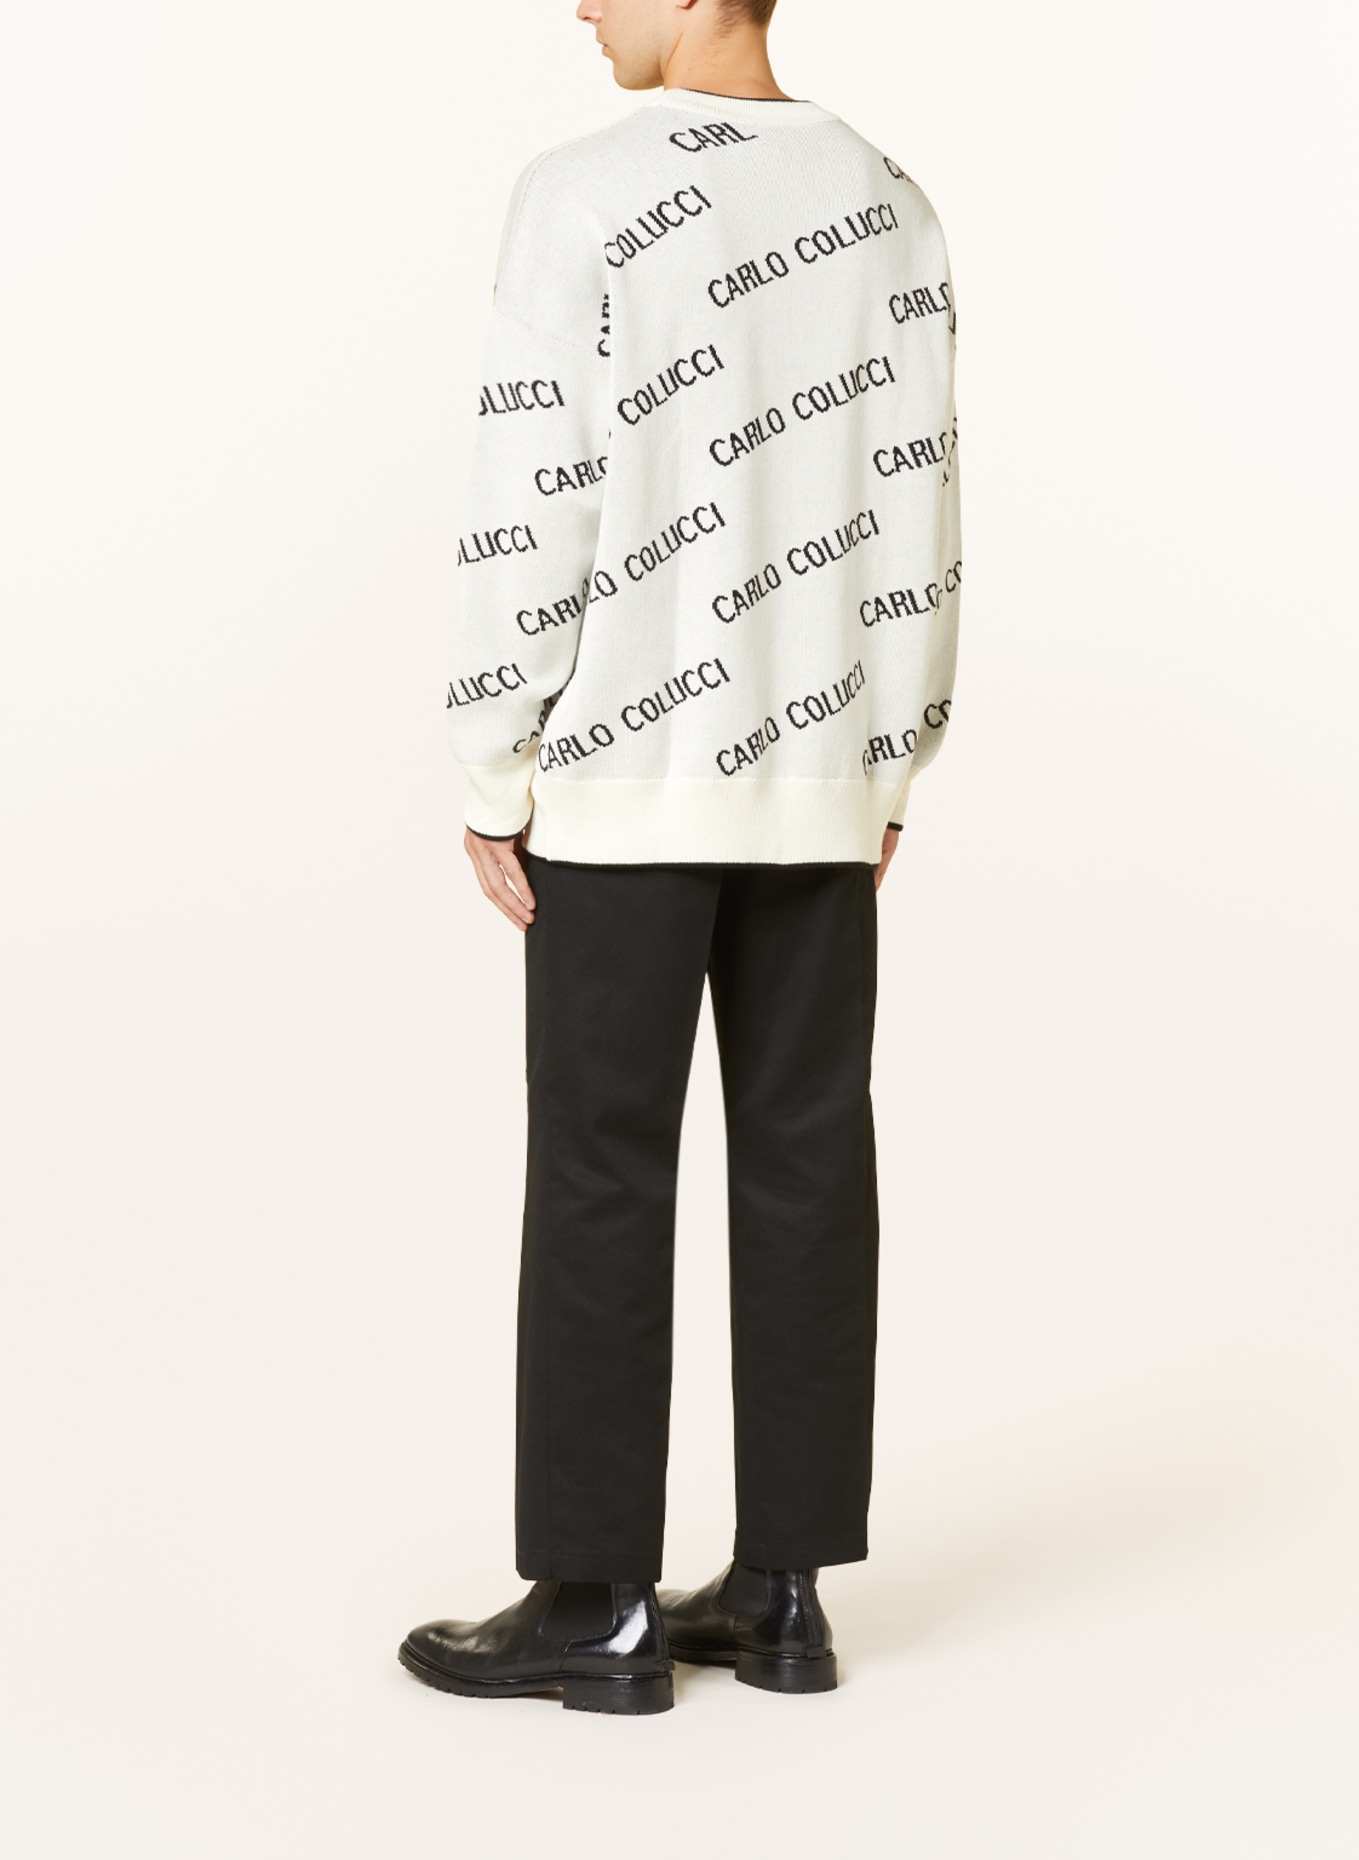 CARLO COLUCCI Pullover, Farbe: CREME/ SCHWARZ (Bild 3)